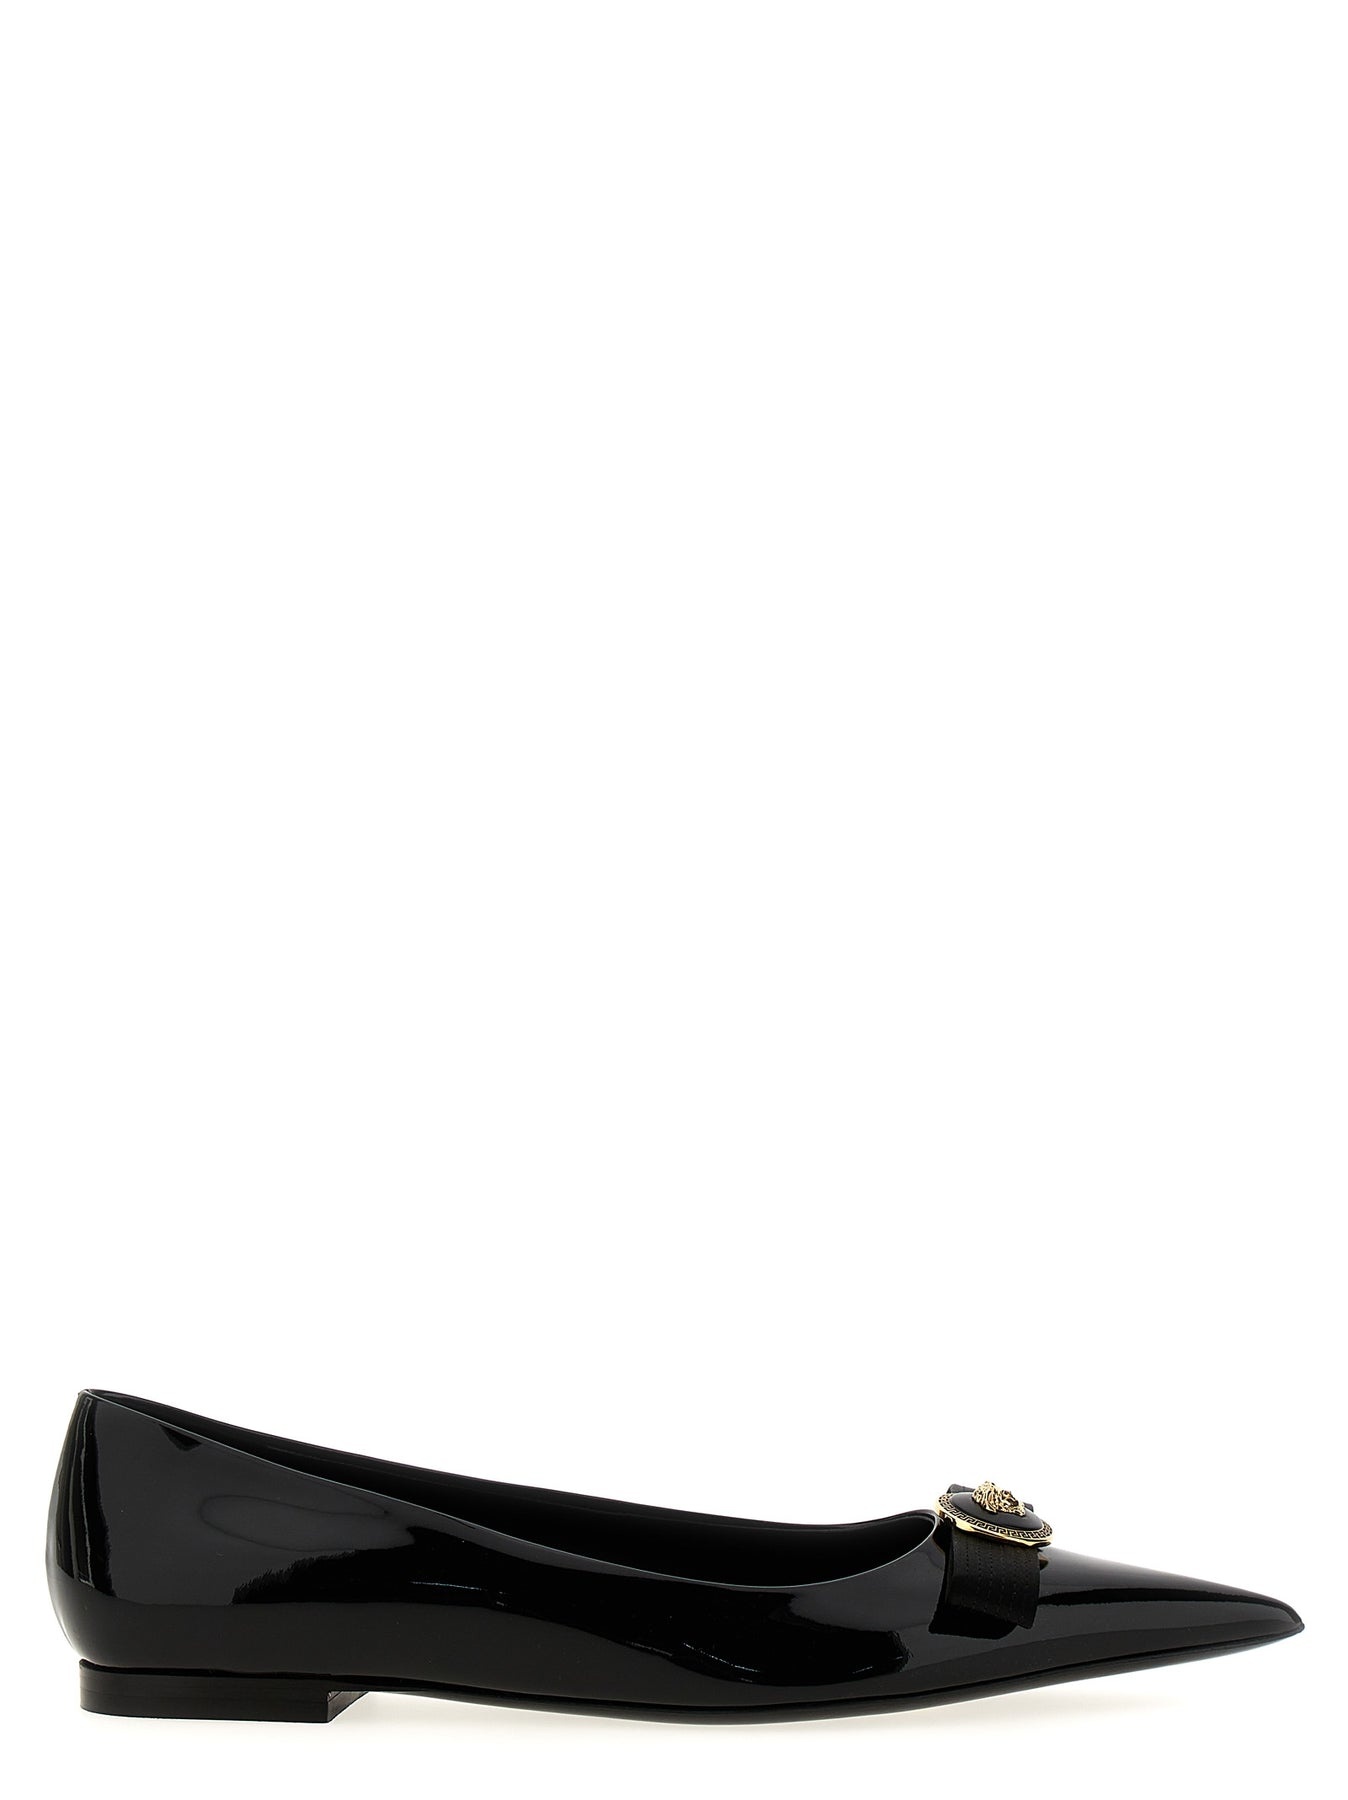 Gianni Ribbon Flat Shoes Black - 1